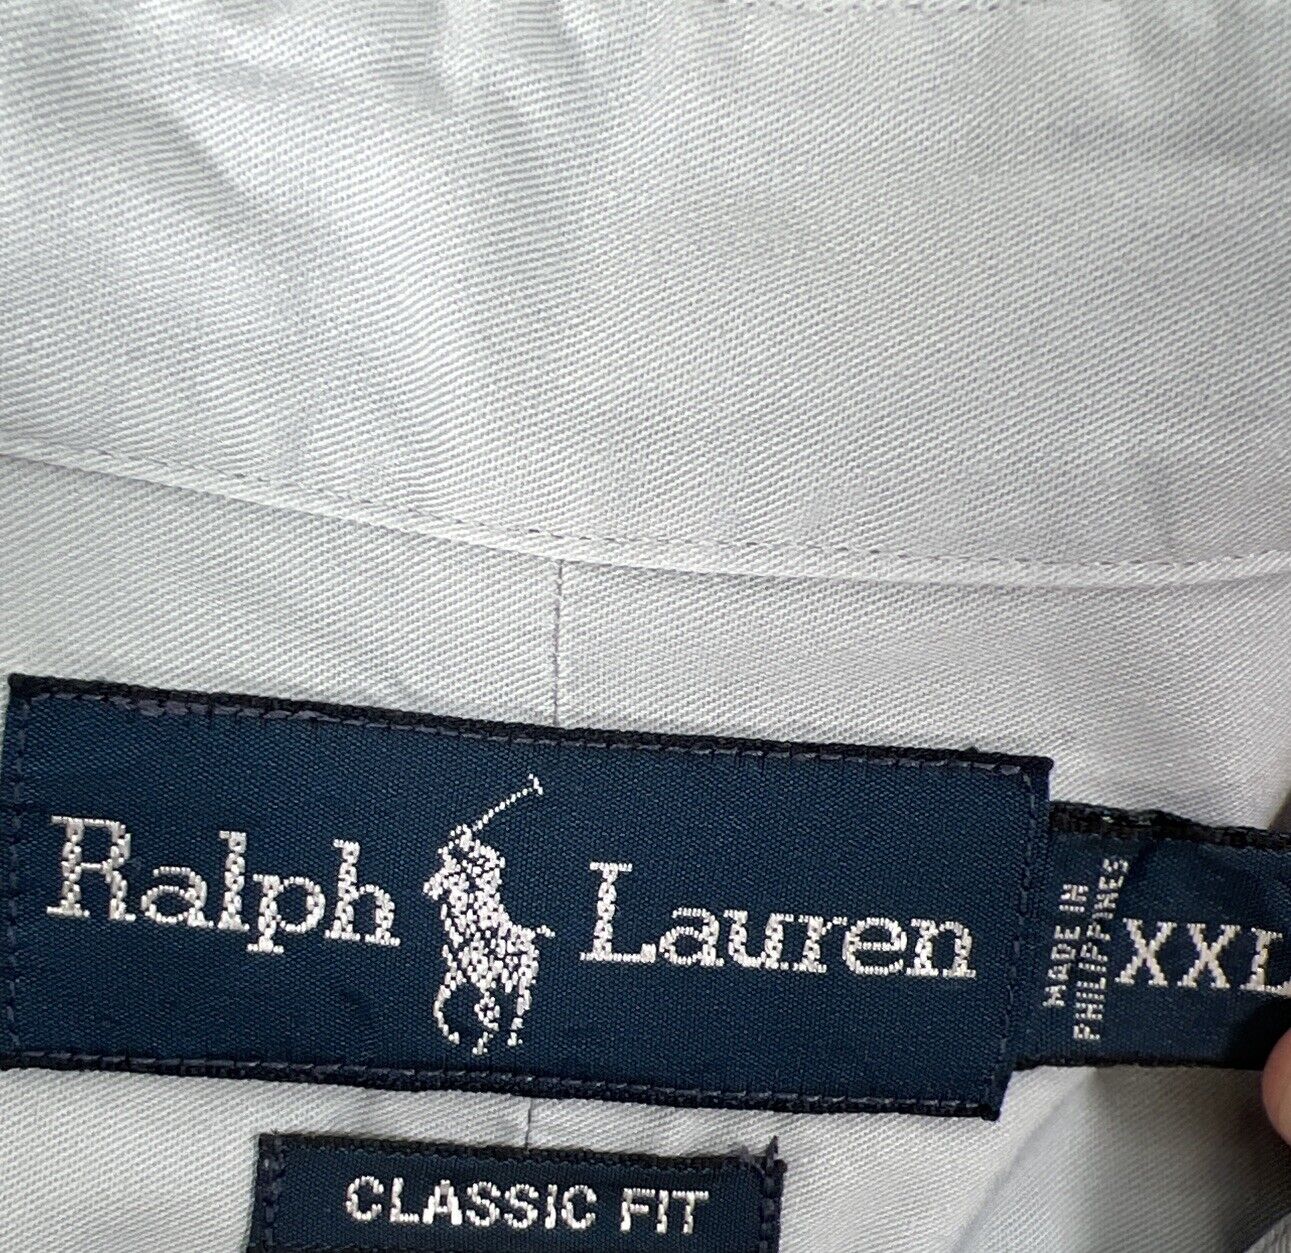 Ralph Lauren Men's Gray Classic Fit Button Down Shirt - XXL